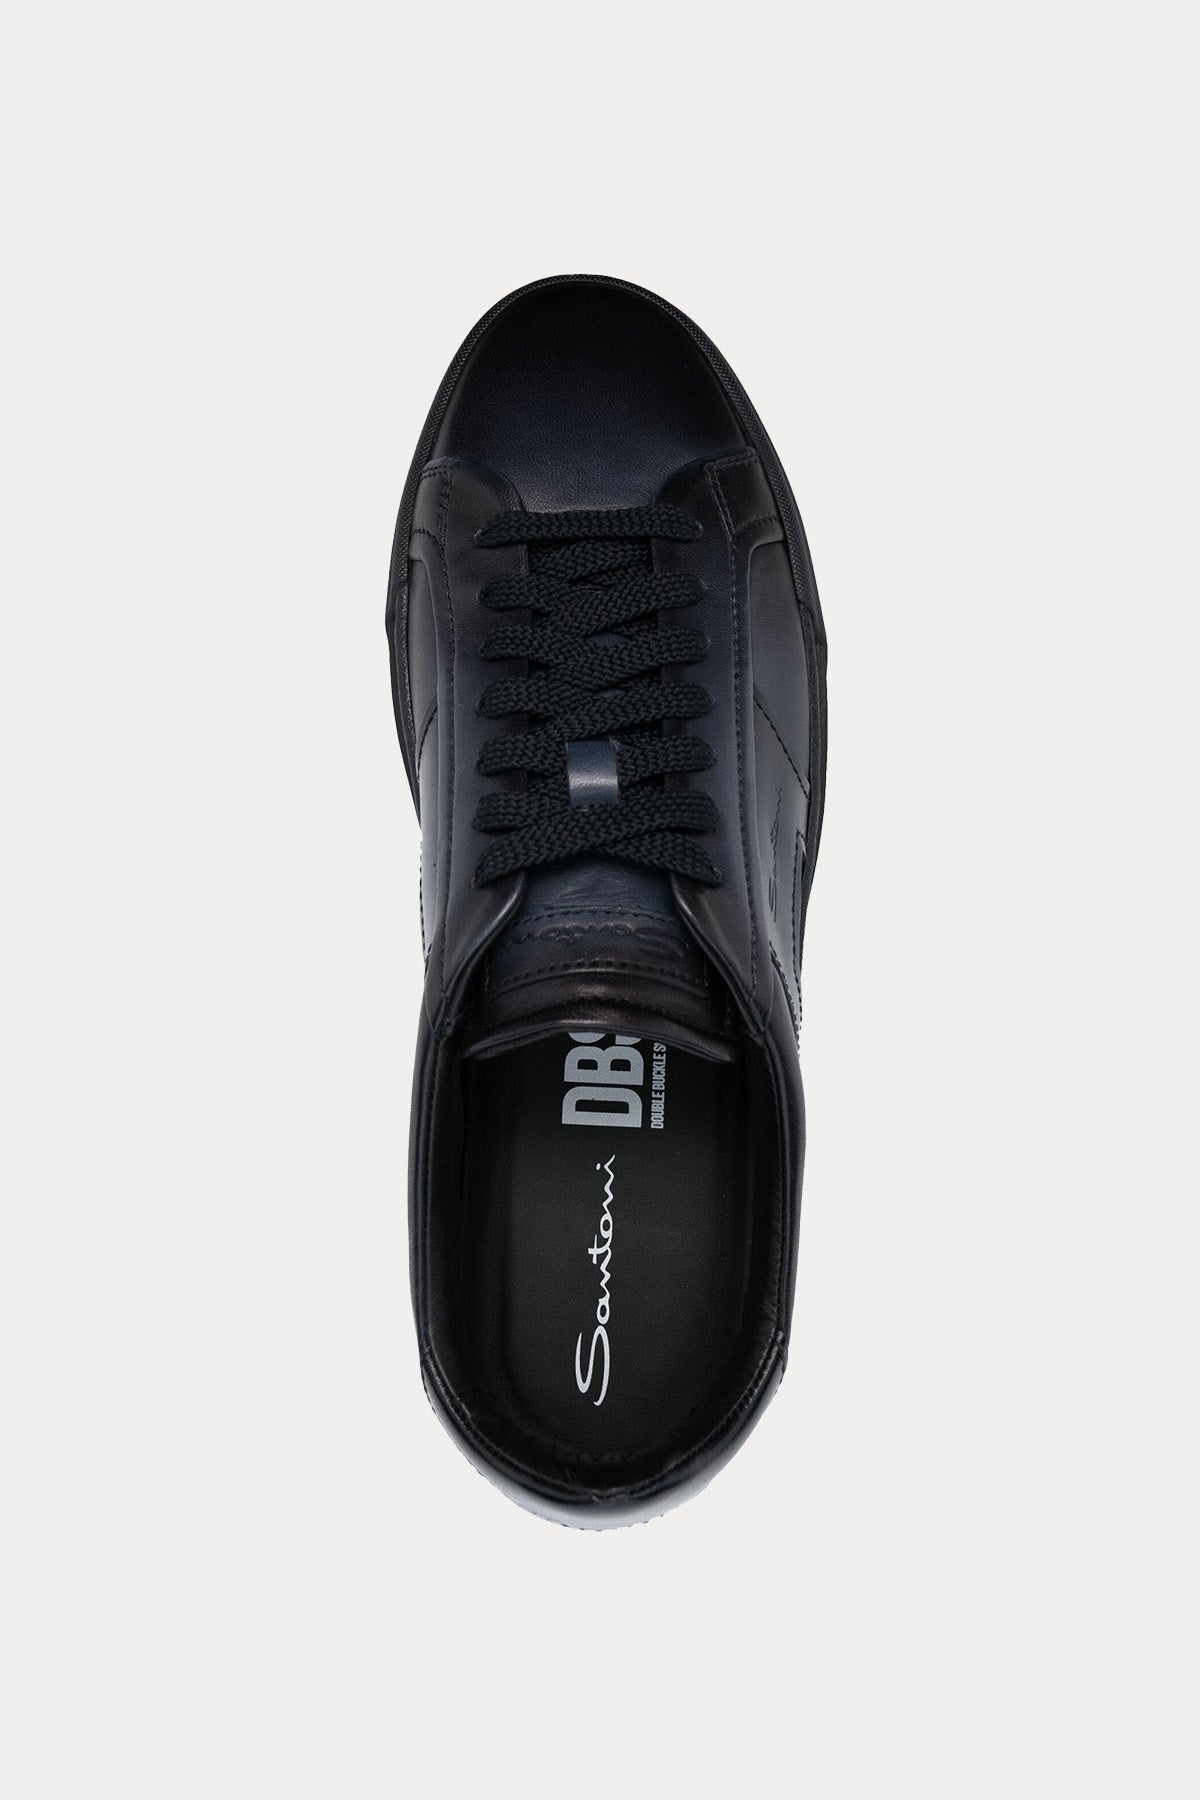 Santoni Double Buckle Deri Sneaker Ayakkabı